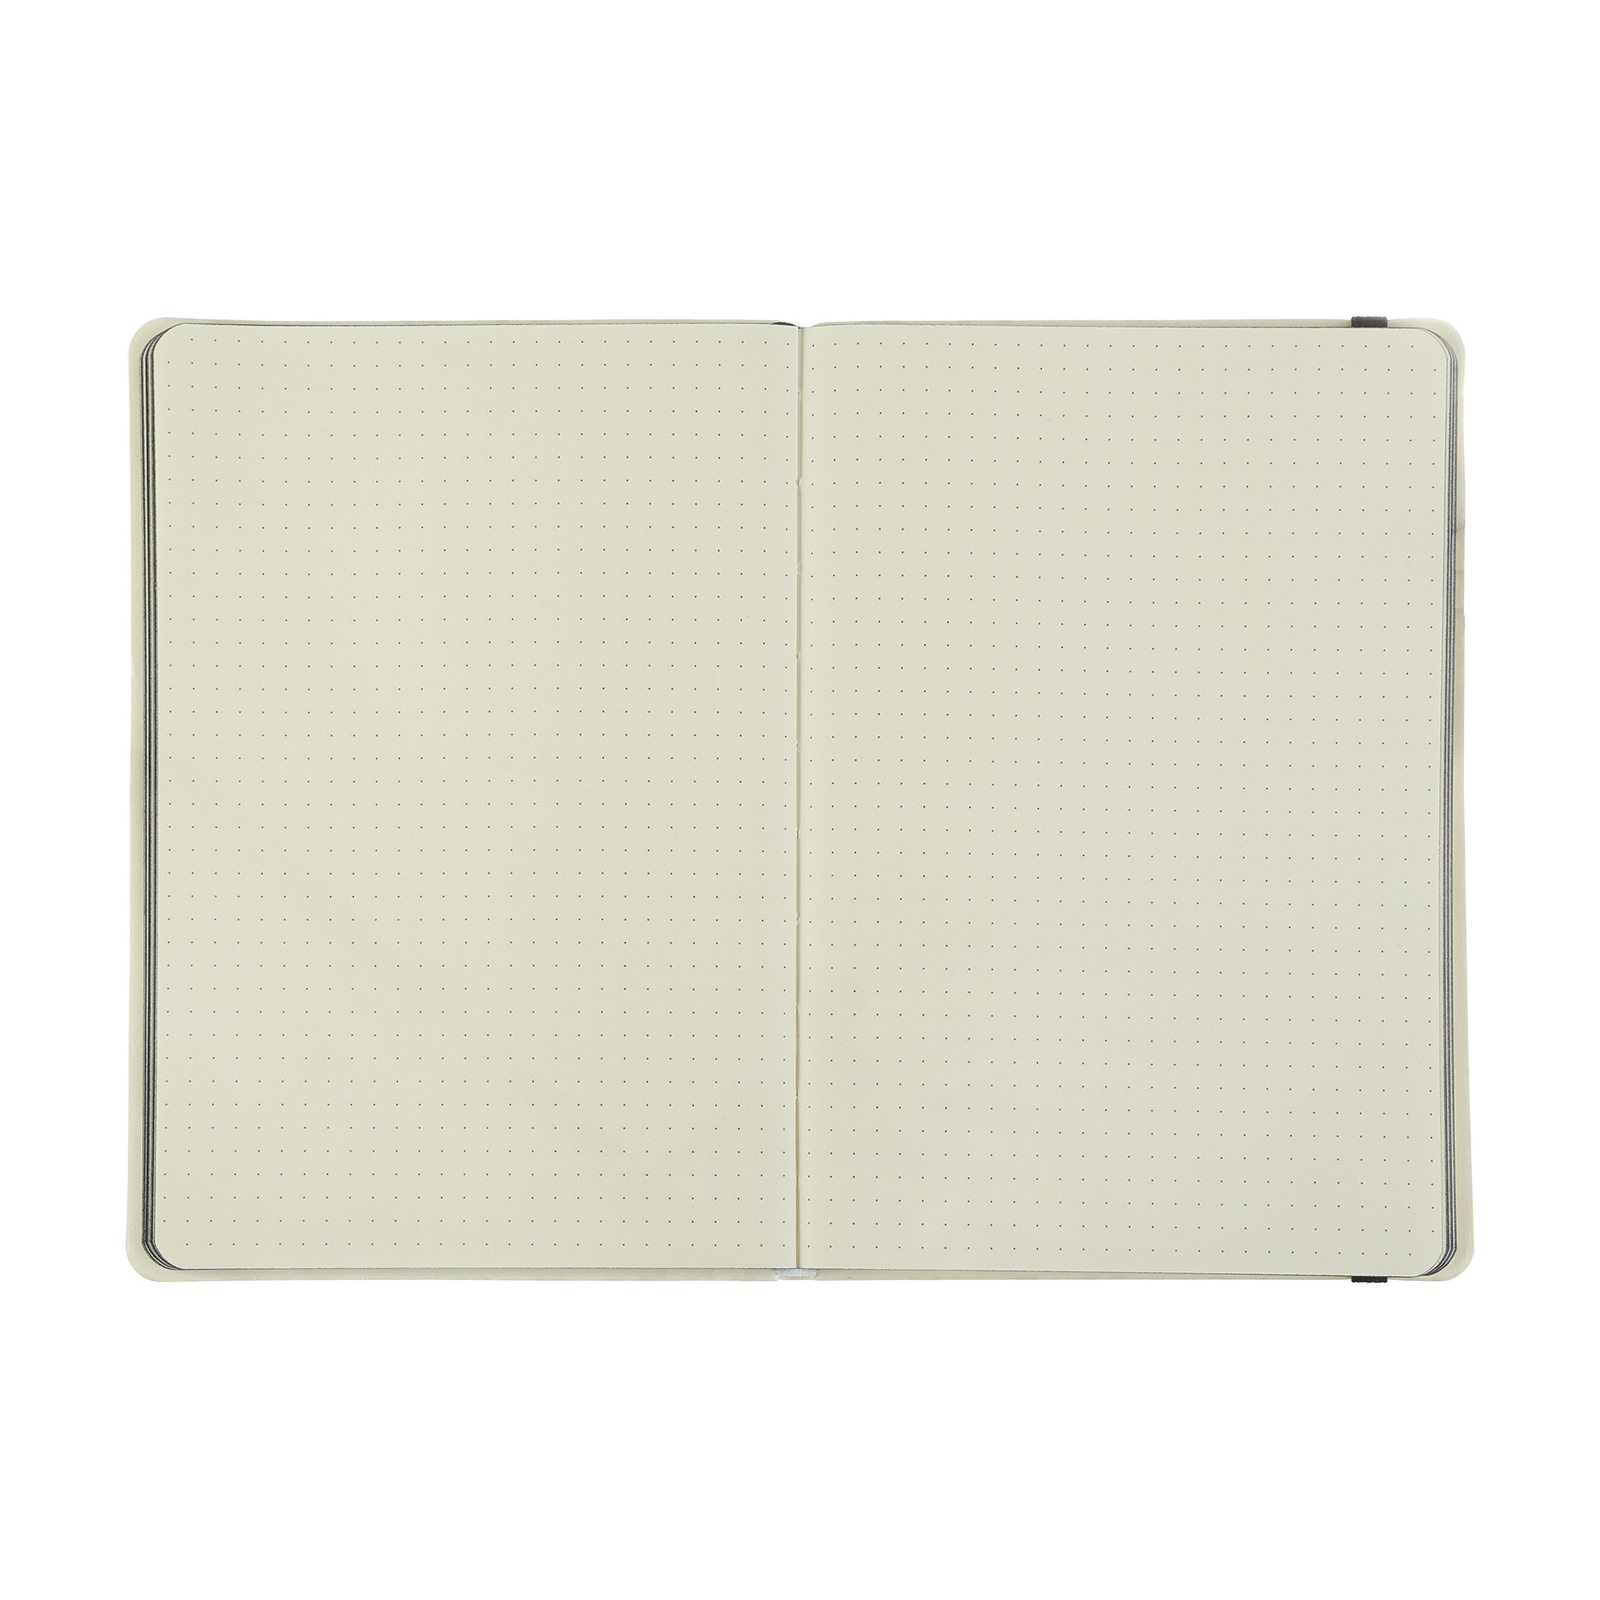 Книга записная Buromax Etalon 125x195 мм 96 листов в точку обложка из искусственной кожи Желтая (BM.291360-08) изображение 4